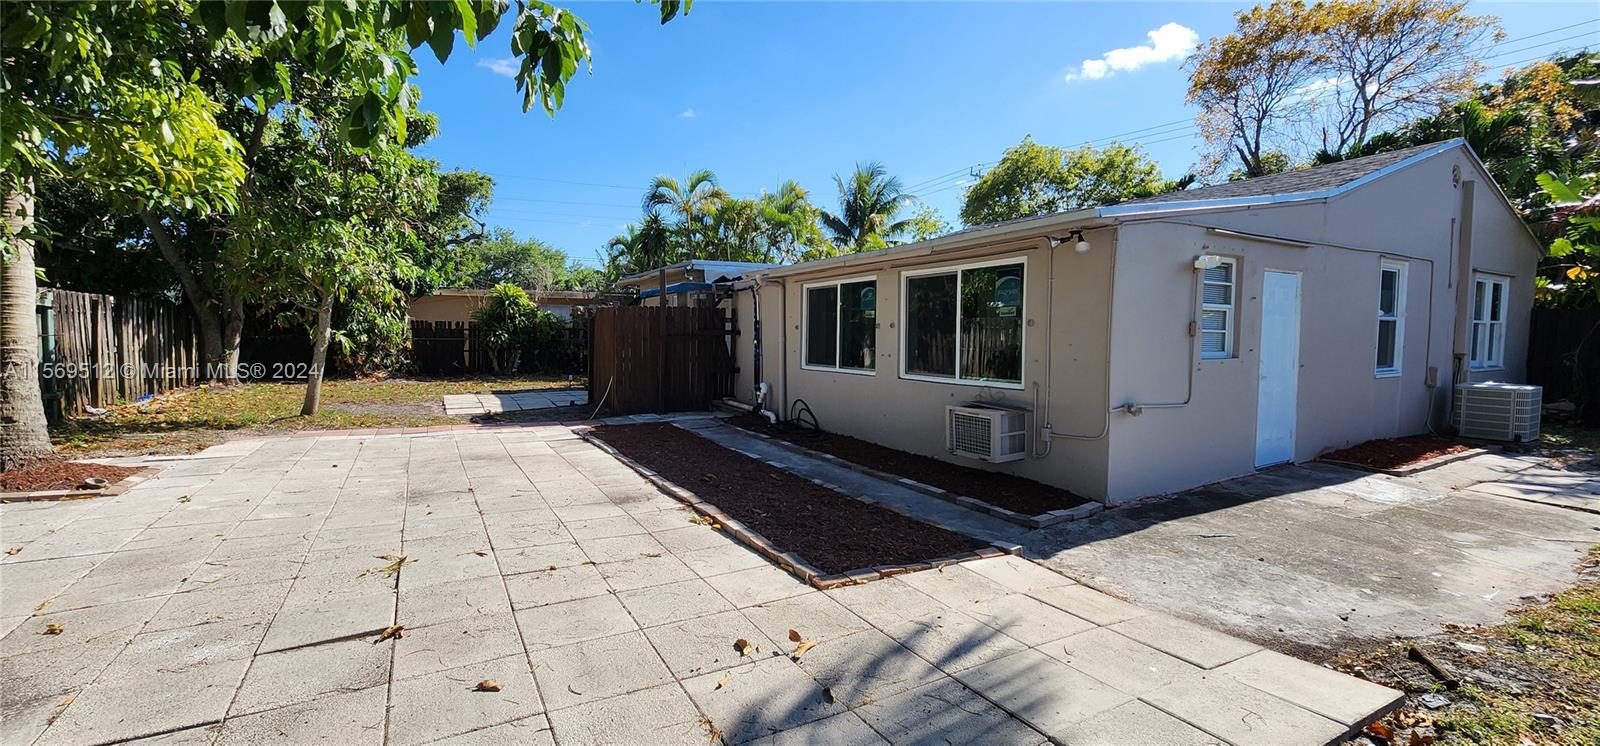 Rental Property at 1221 N 58th Ave, Hollywood, Broward County, Florida -  - $595,000 MO.